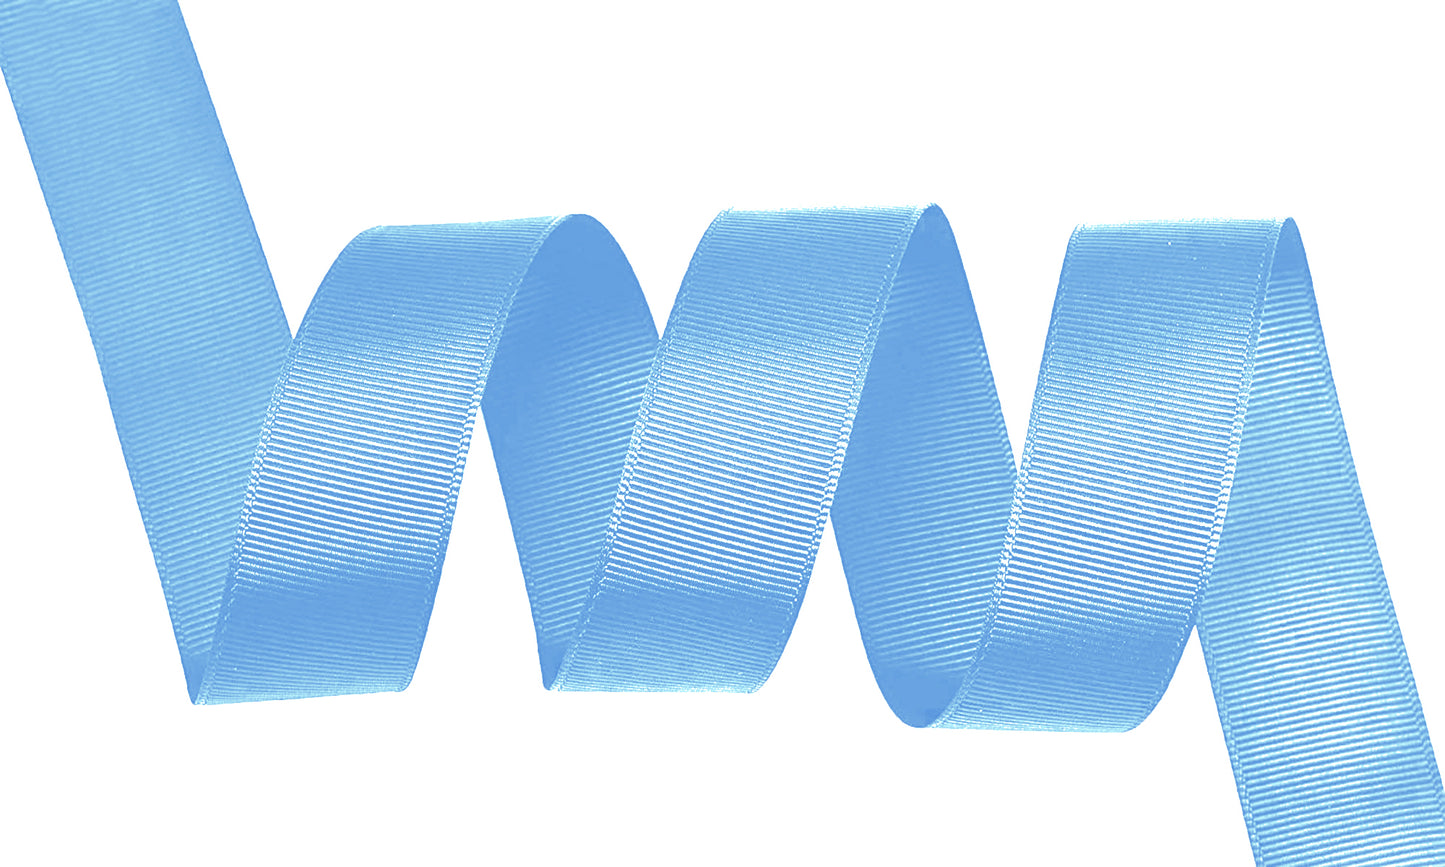 5 Yards Solid Blue Mist Grosgrain Ribbon Yardage DIY Crafts Bows USA